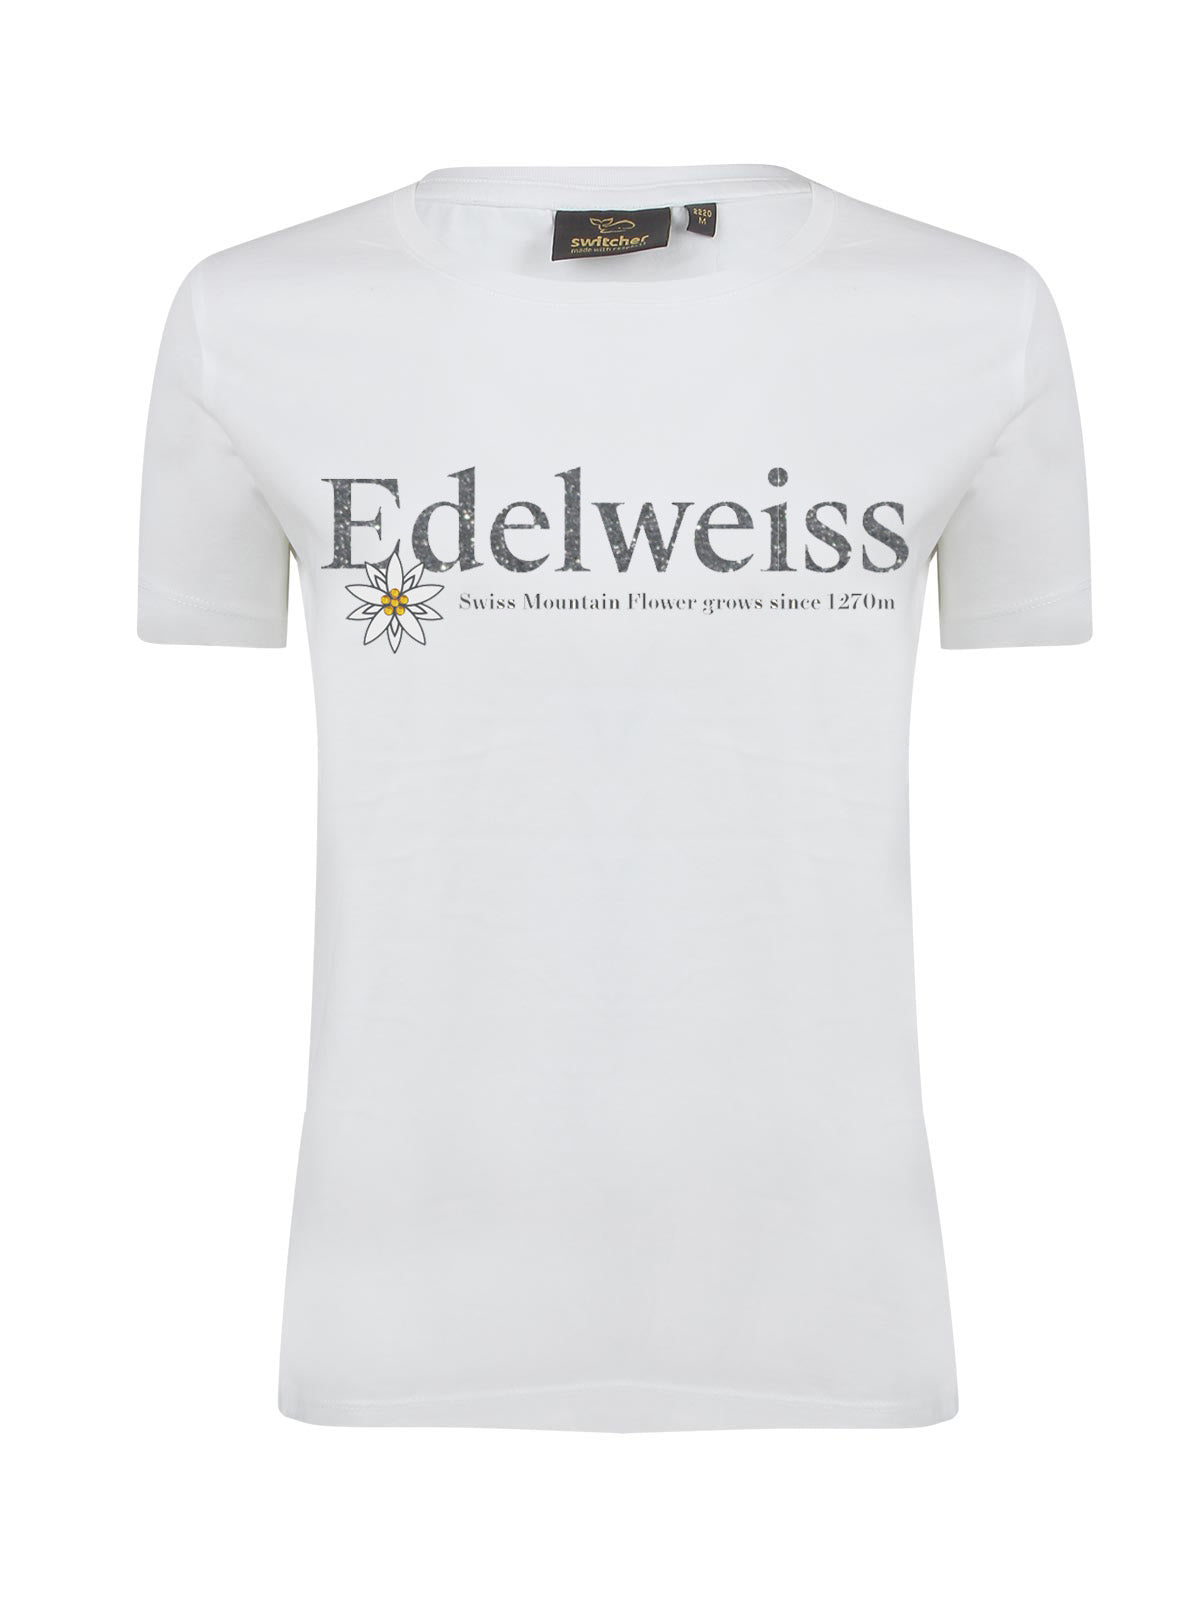 Edelweiss Maglietta Donna - 2085